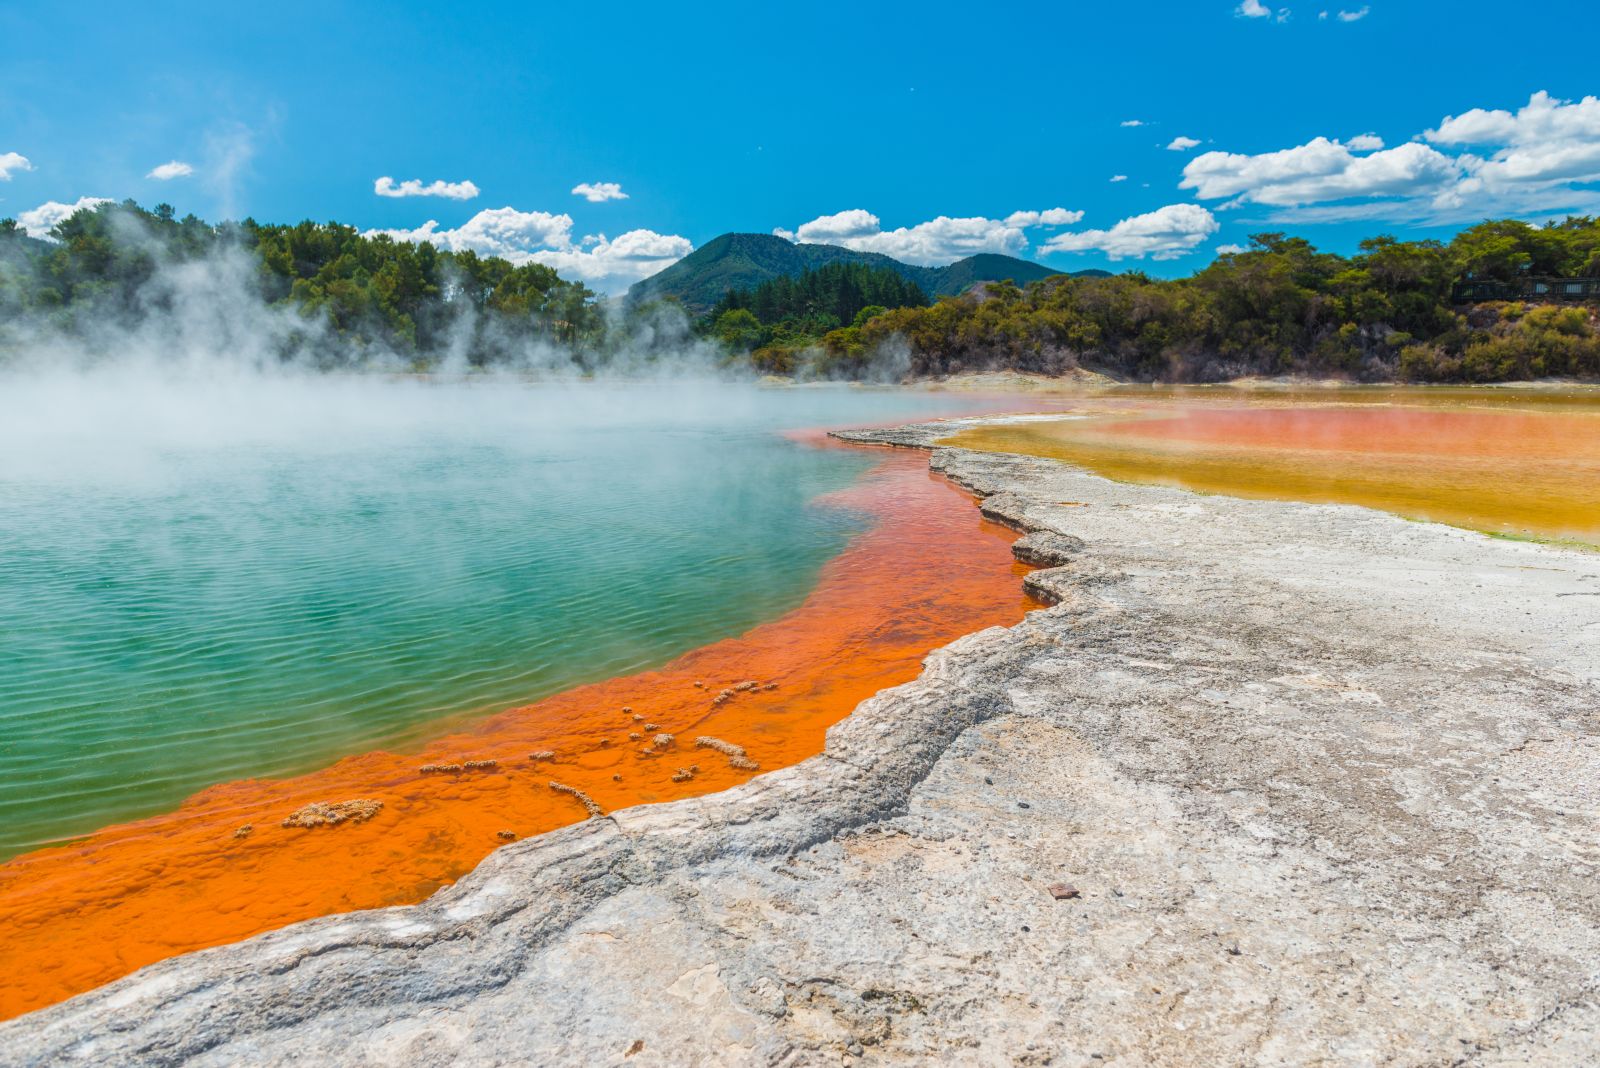 Bright thermal pools at Wai-o-Tapu in Rotorua New Zealand